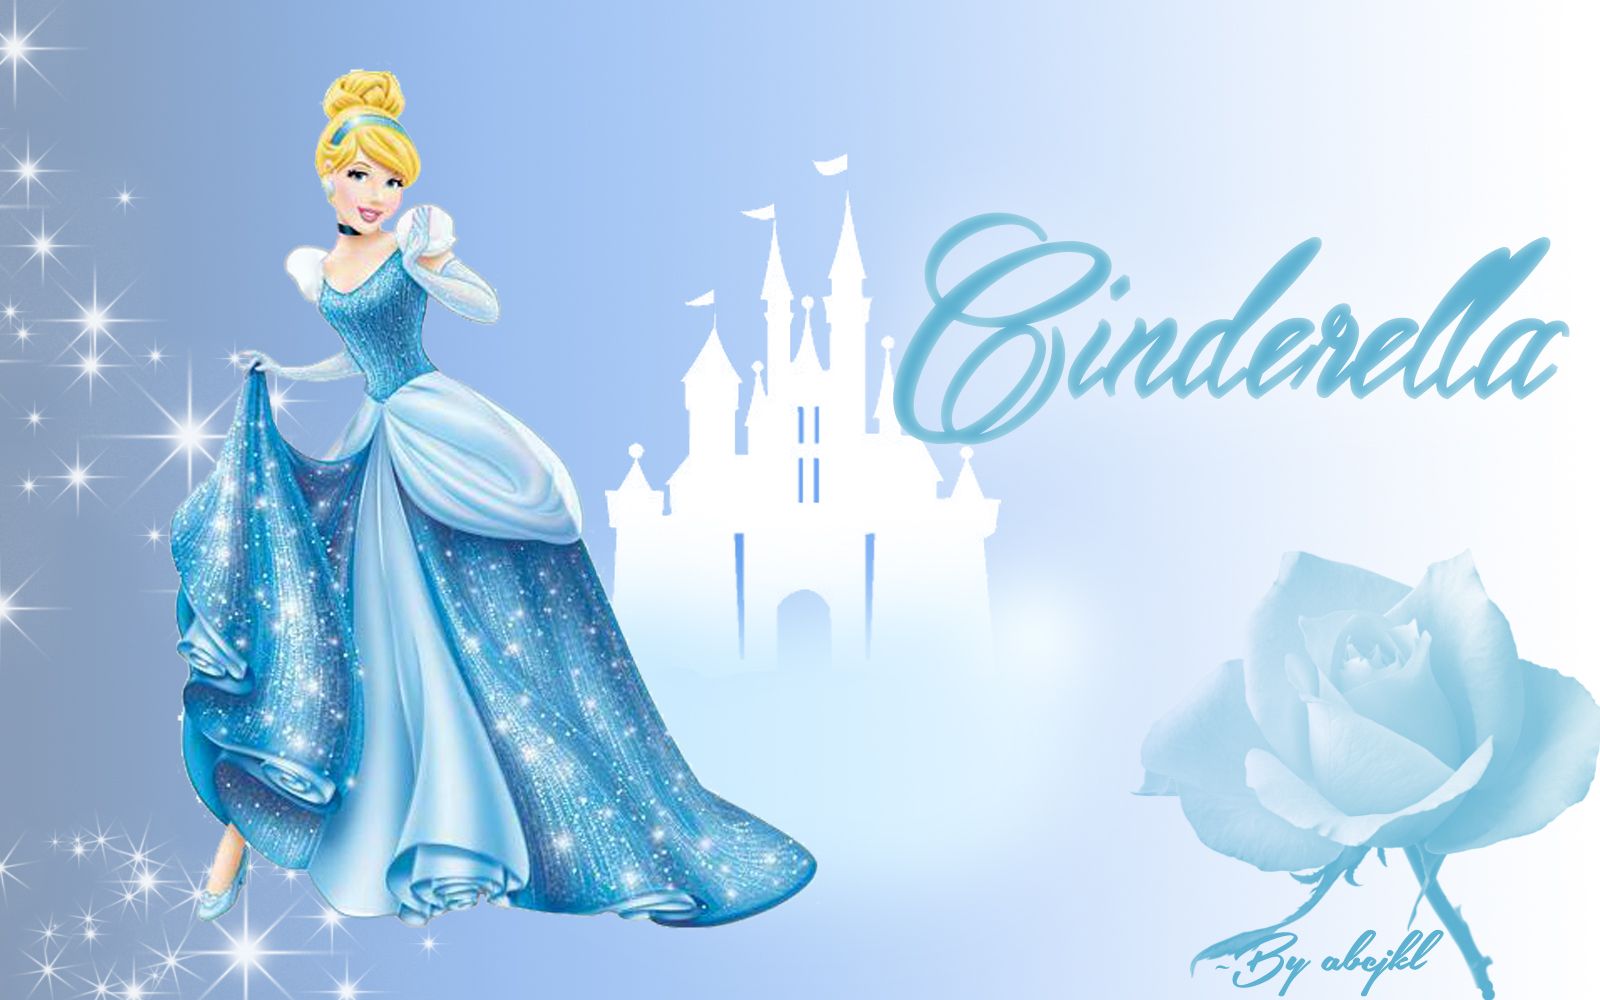 Disney Princess Cinderella Wallpaper Hd , HD Wallpaper & Backgrounds